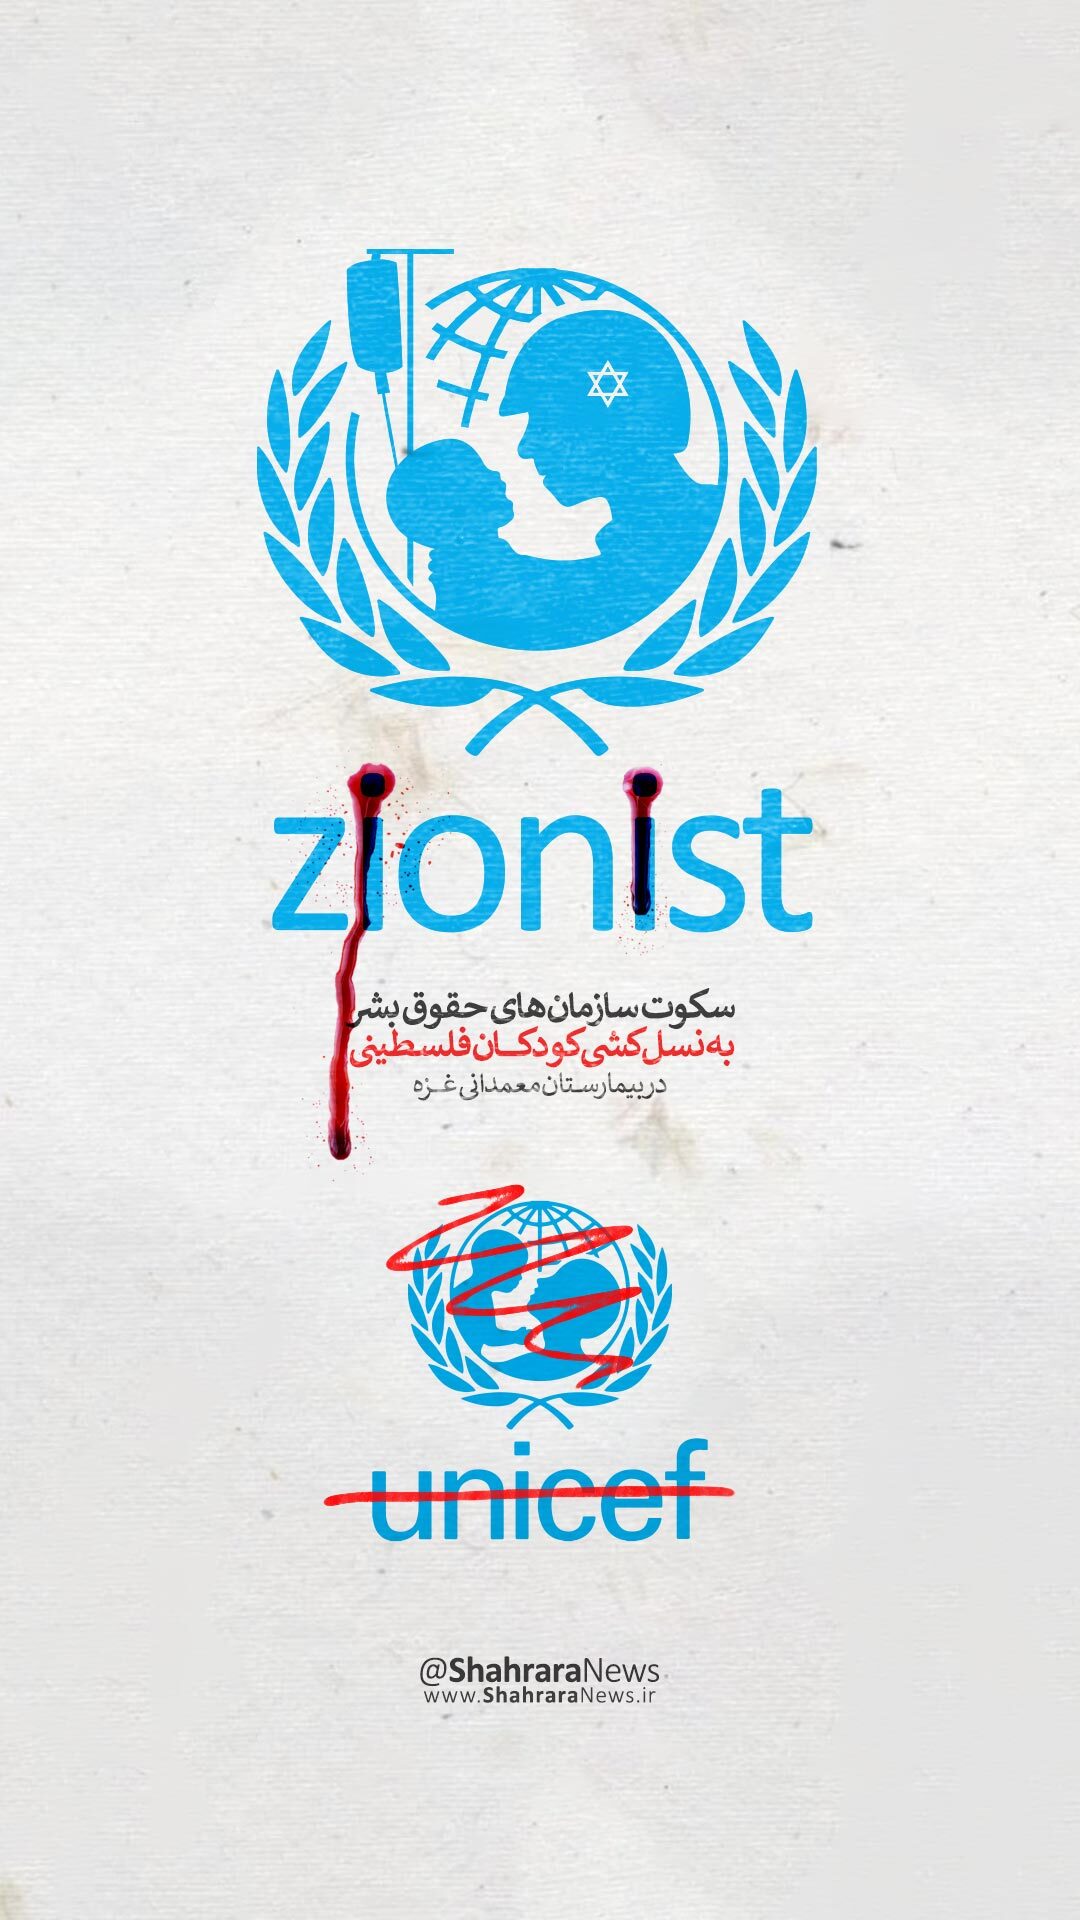 گرافیک | استوری در محکوم کردن جنایات اسرائیل و حمایت از طوفان الاقصی و غزه